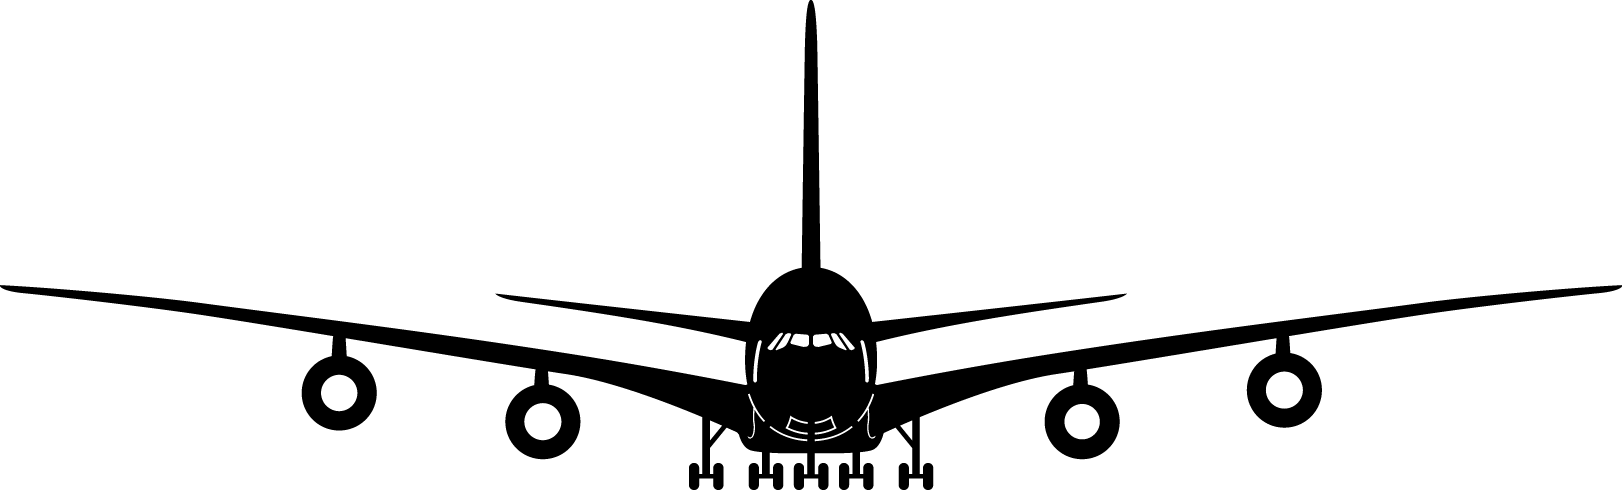 Uçak